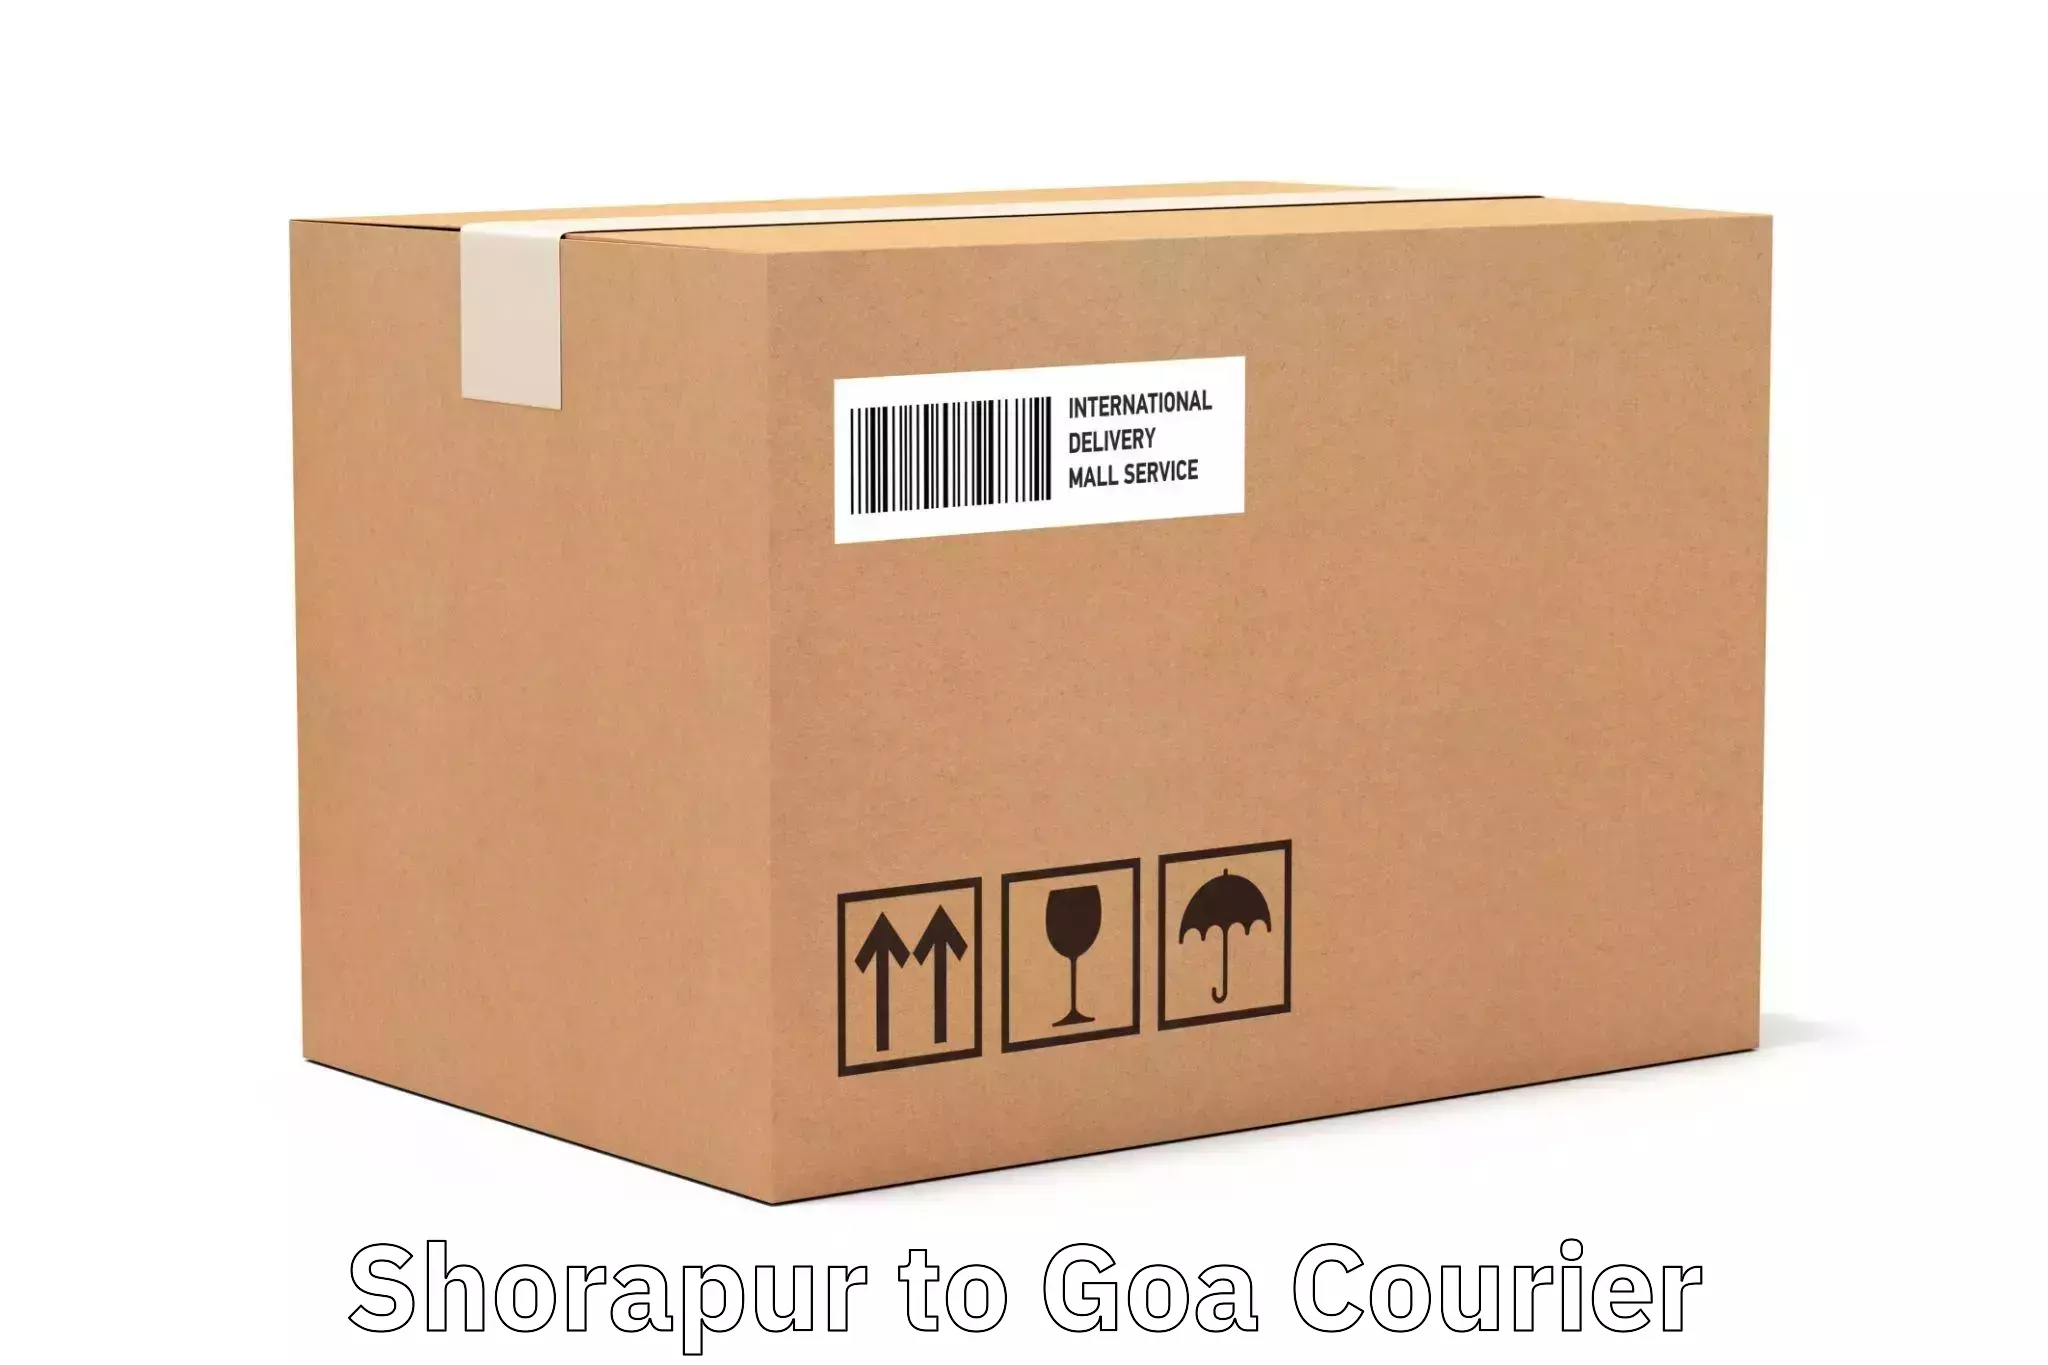 Express courier capabilities Shorapur to Mormugao Port